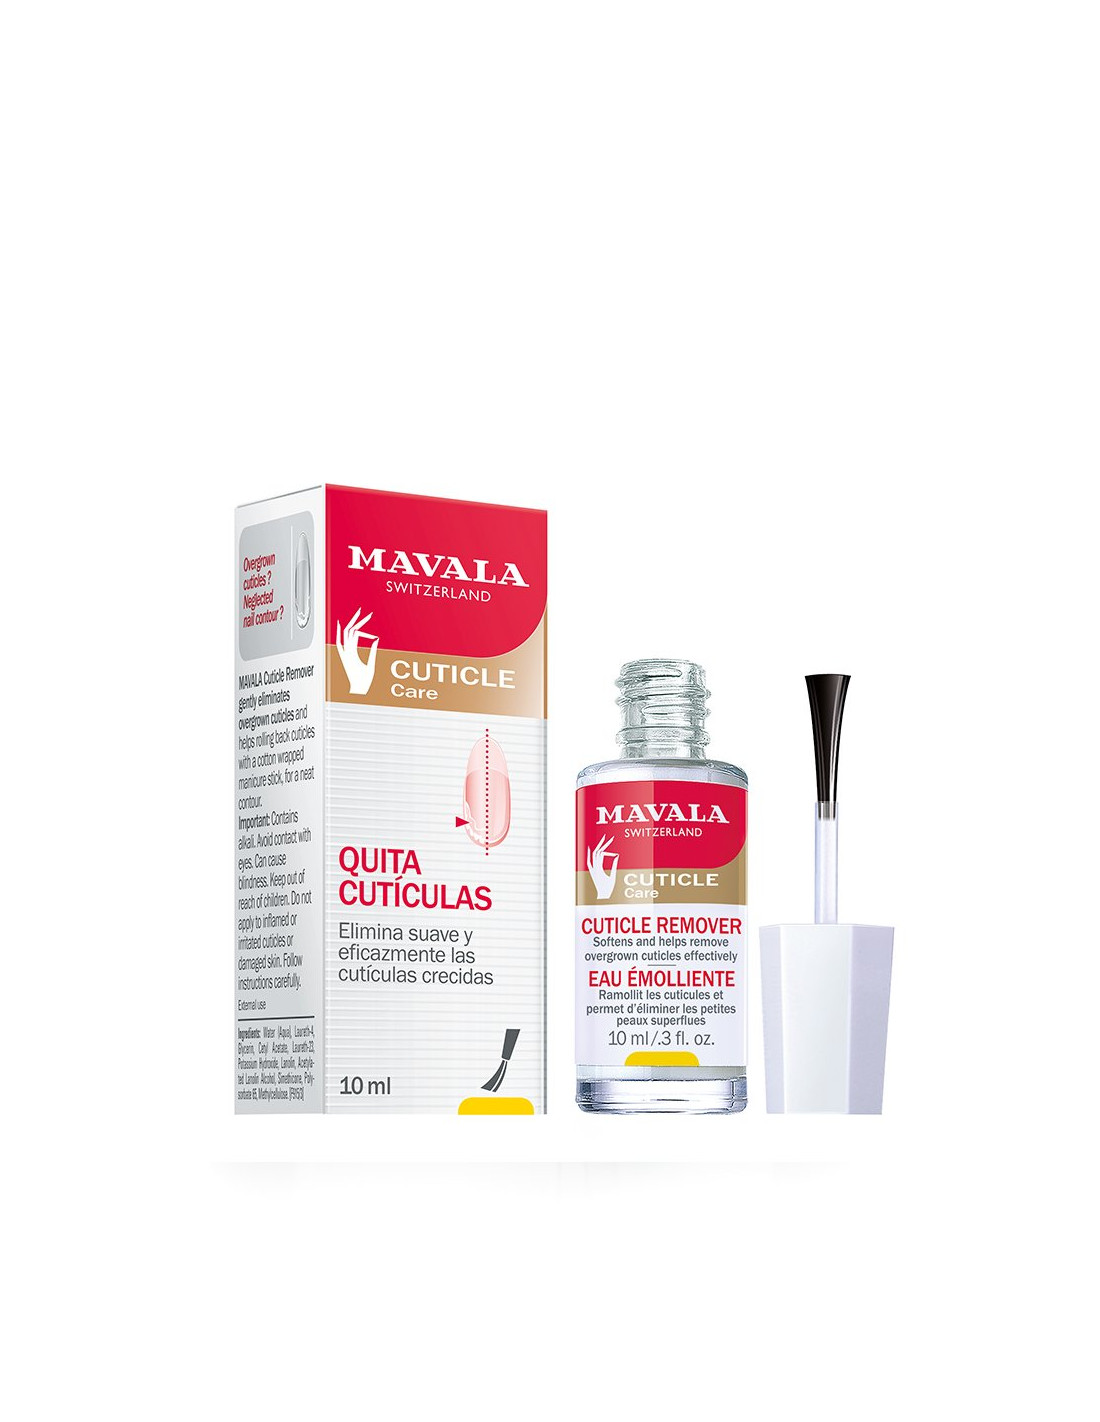 Mavala Quitacuticulas Cuidado y belleza de uñas en Farmacias y Perfumerias  Rp